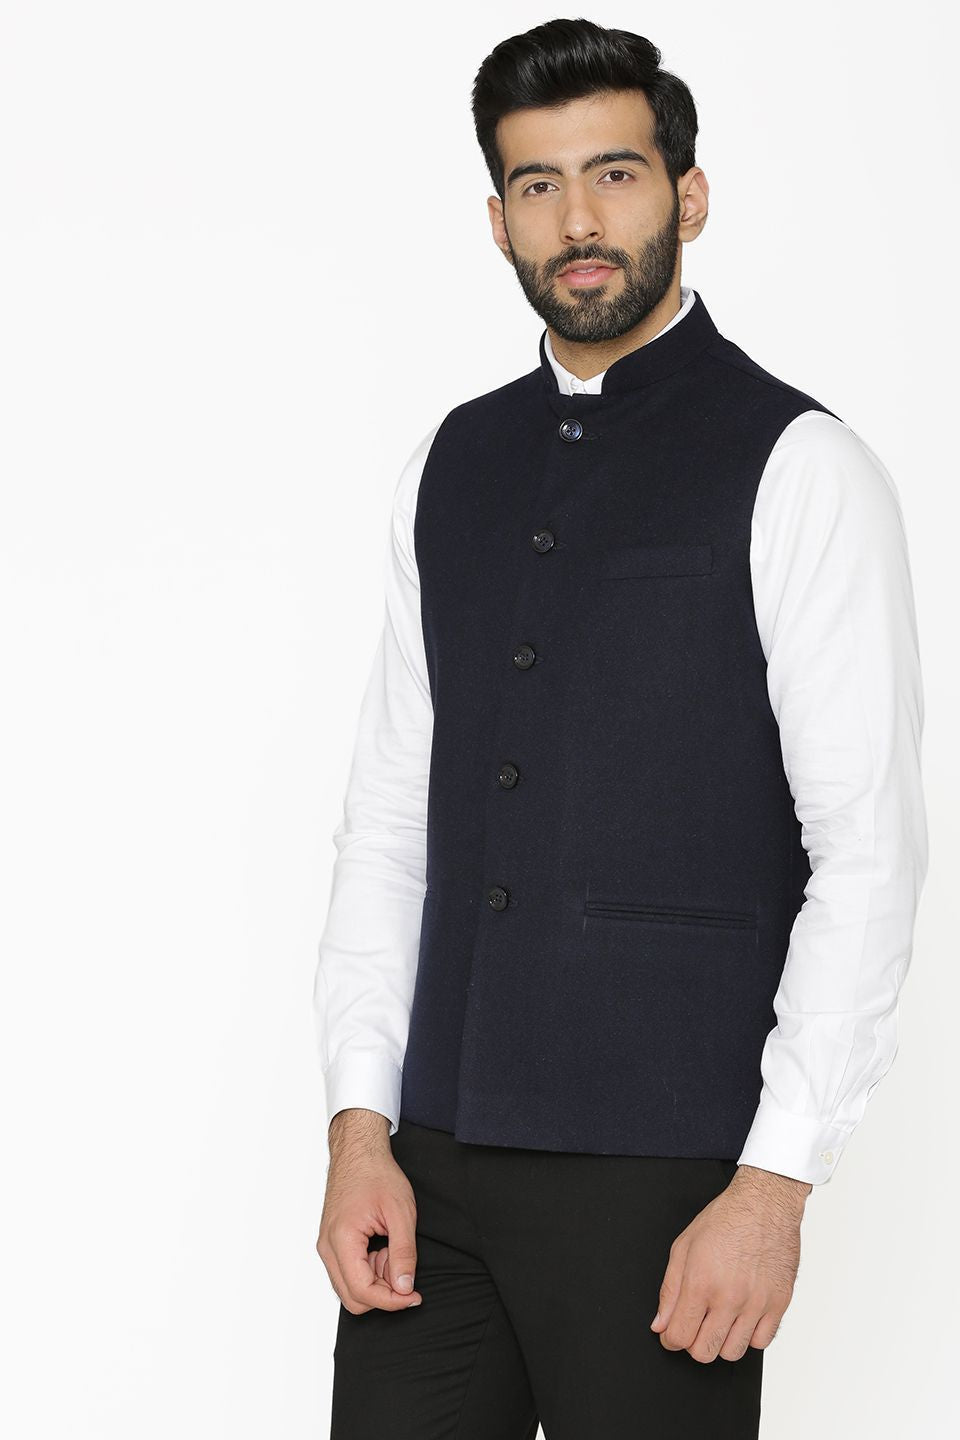 Wintage Men's Tweed Wool Festive and Casual Nehru Jacket Vest Waistcoat ...